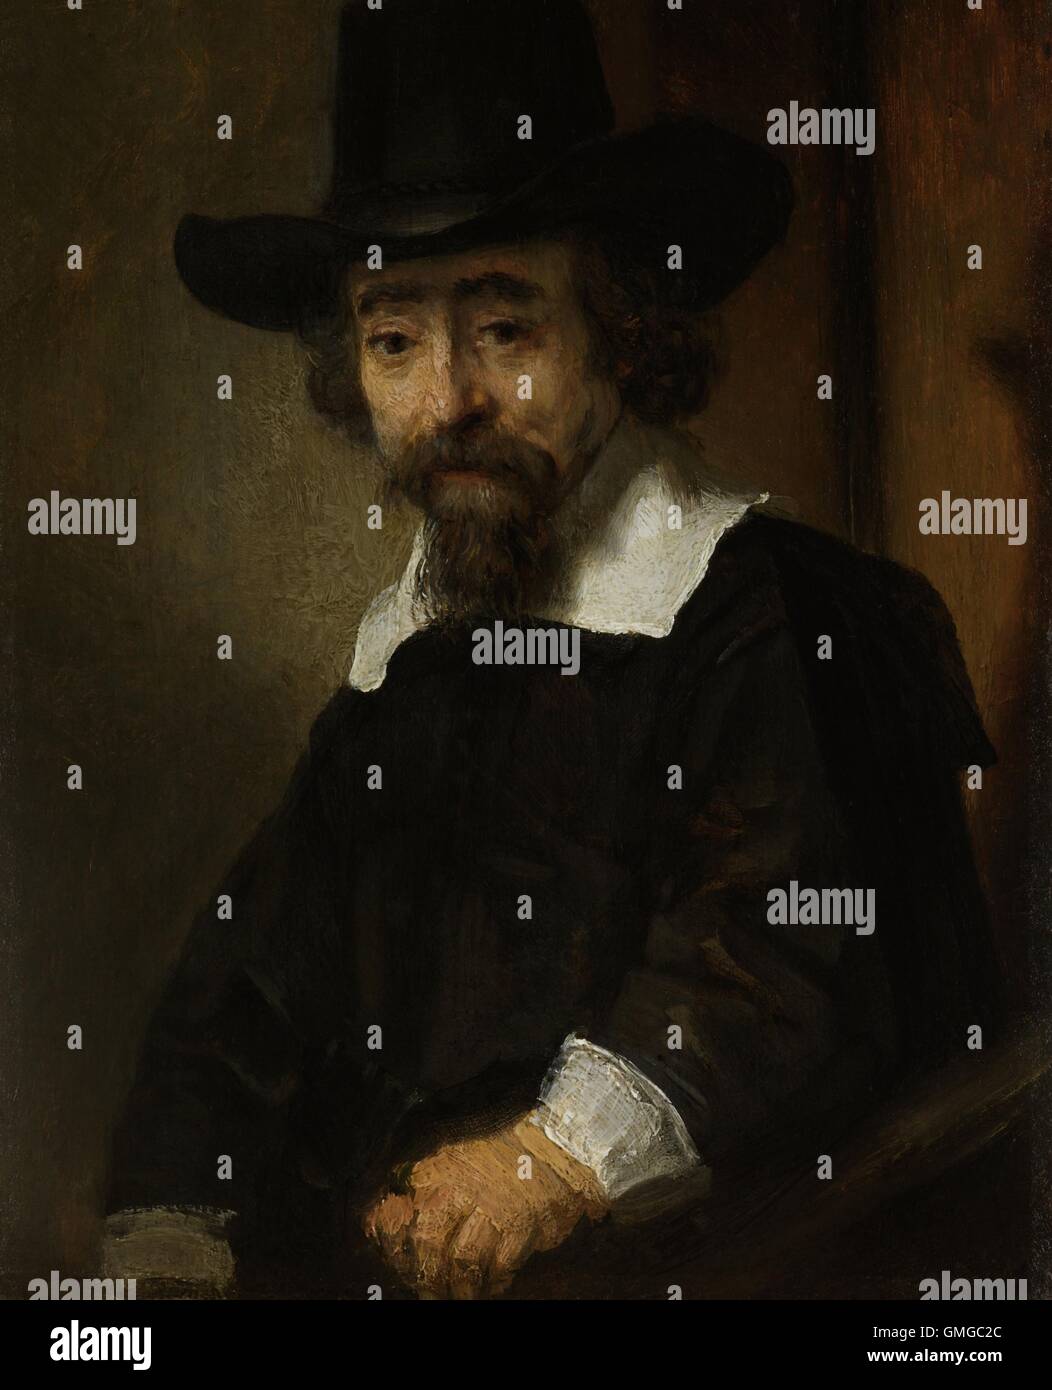 Portrait d'un homme, qu'on croit être le Dr Ephraim Bueno, de Rembrandt, 1645, la peinture hollandaise, huile sur panneau. La famille de Bueno était une dynastie médical juif expulsé d'Espagne en 1492 (BSLOC 2016 3 13) Banque D'Images